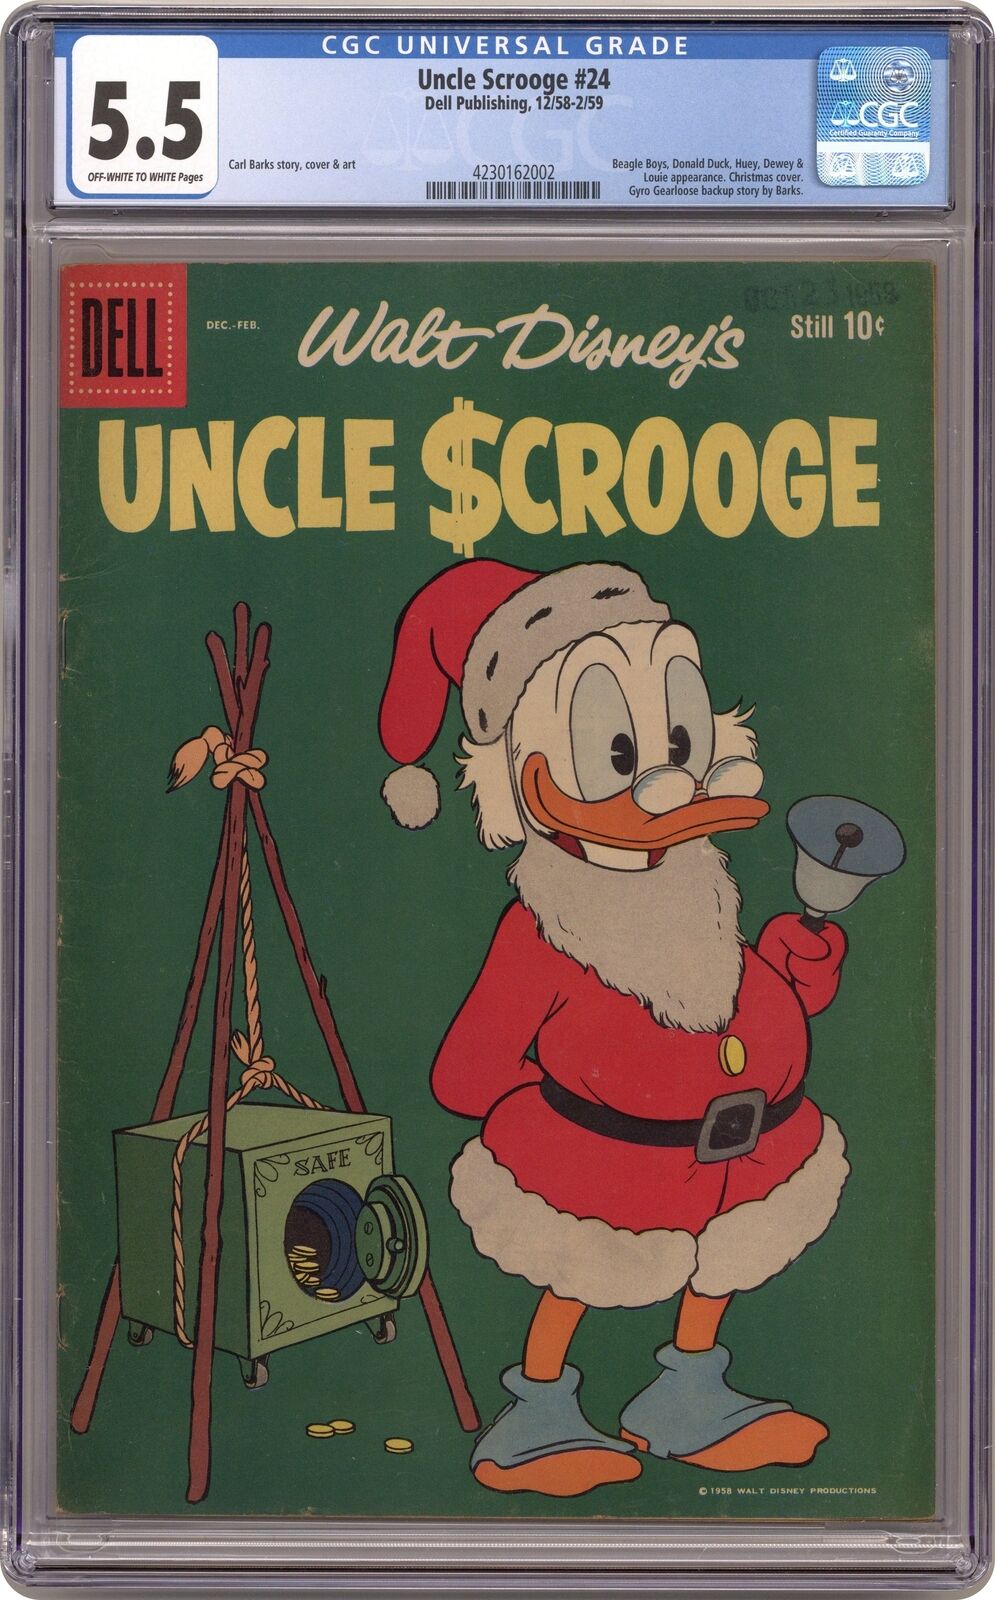 Uncle Scrooge #24 CGC 5.5 1959 4230162002